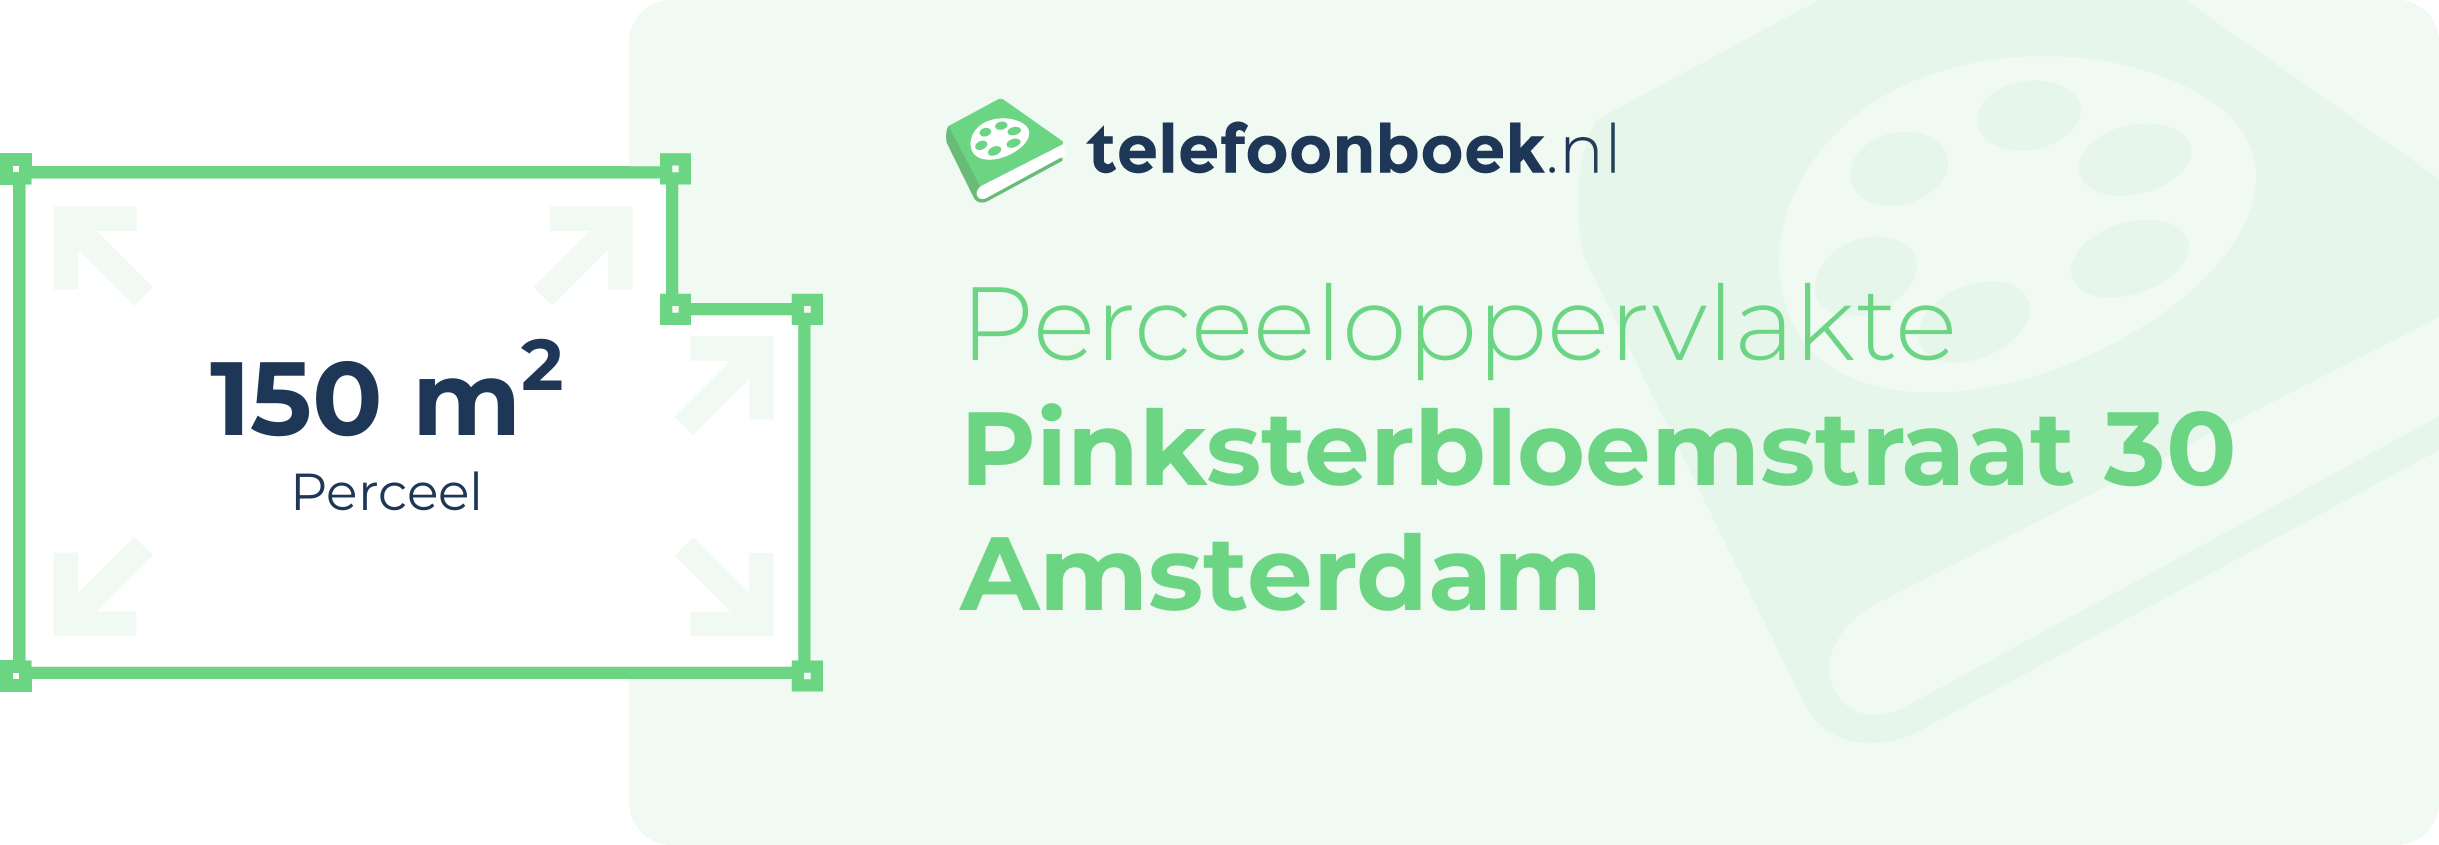 Perceeloppervlakte Pinksterbloemstraat 30 Amsterdam